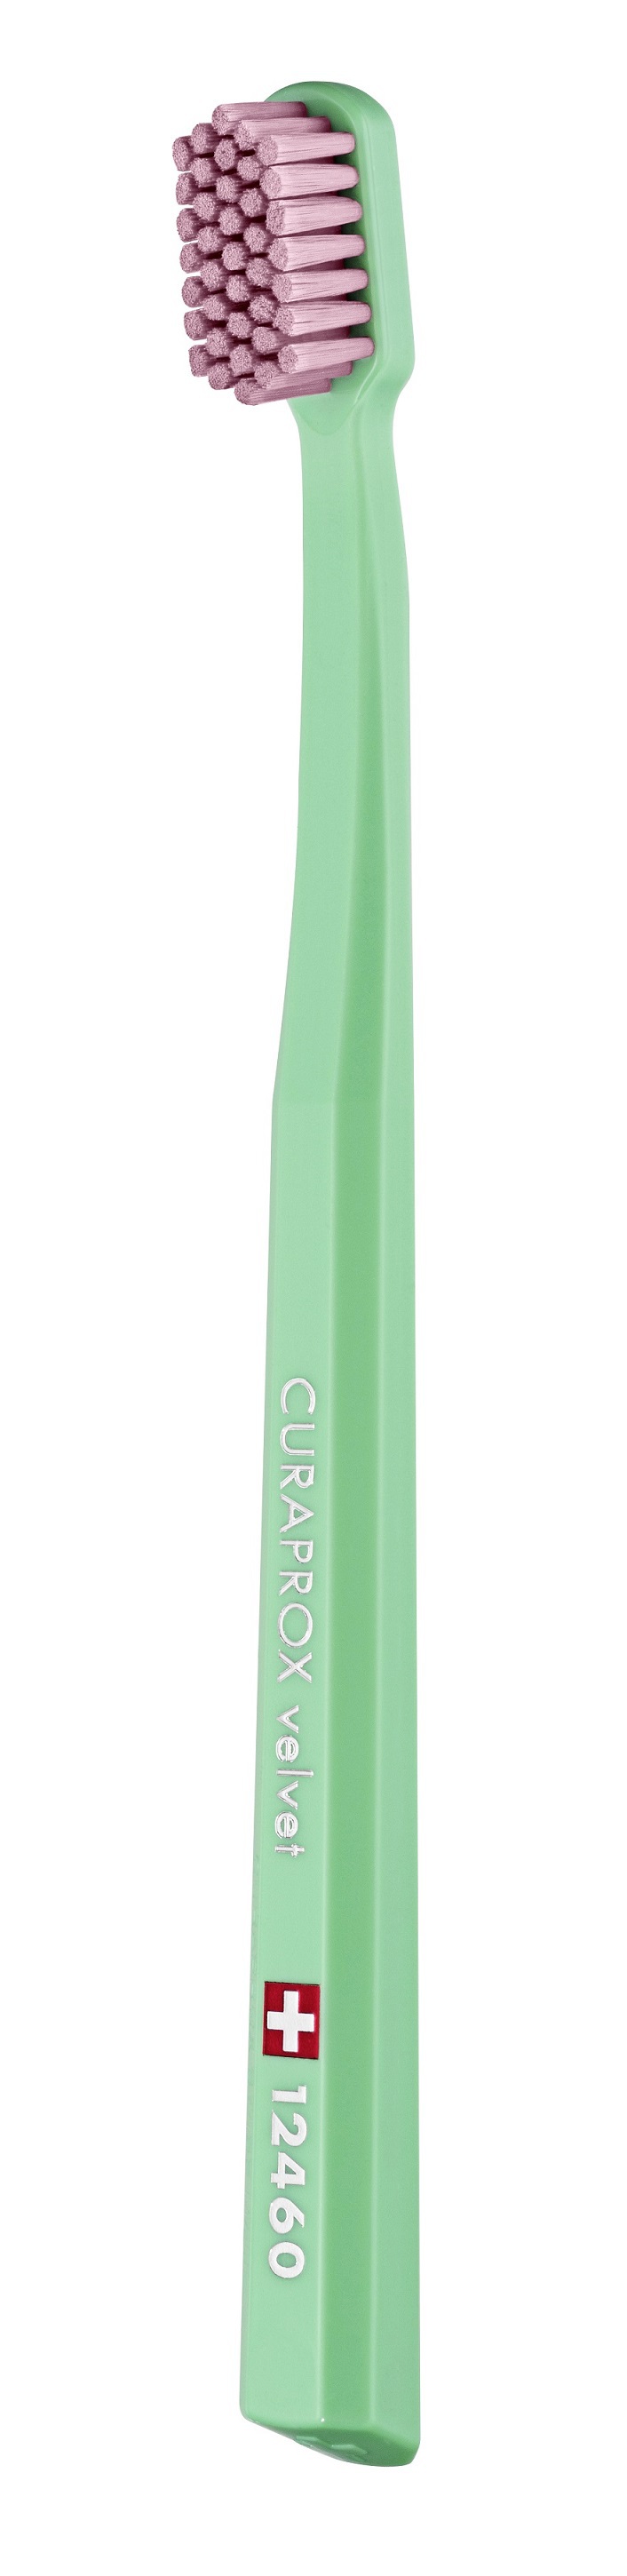 Купить Curaprox Зубная щетка Velvet Megasoft, d 0, 08 мм, 1 шт (Curaprox, Мануальные зубные щетки)